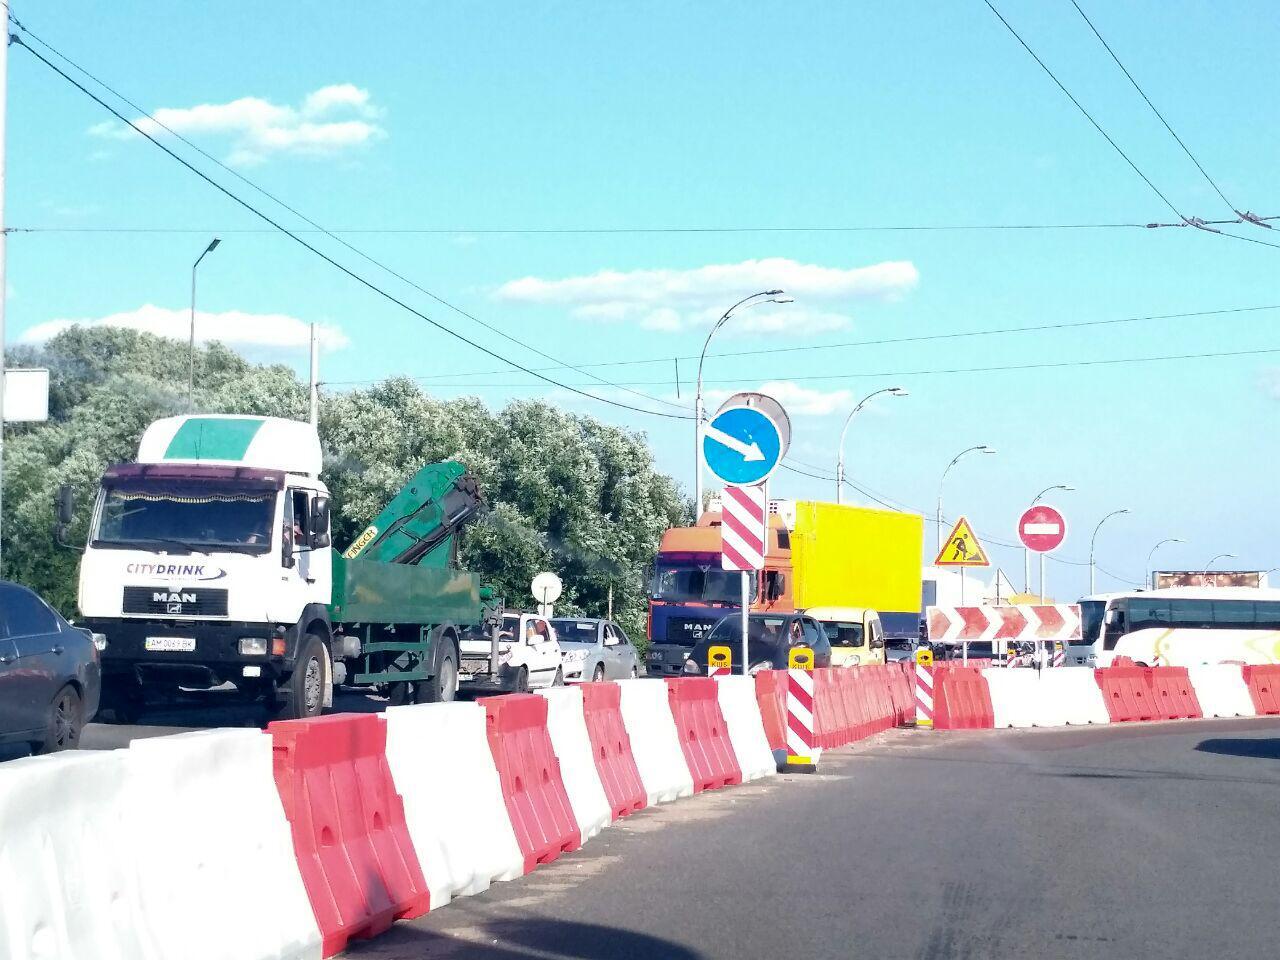 Перекрили трасу: через ДТП у Києві утворився масштабний затор